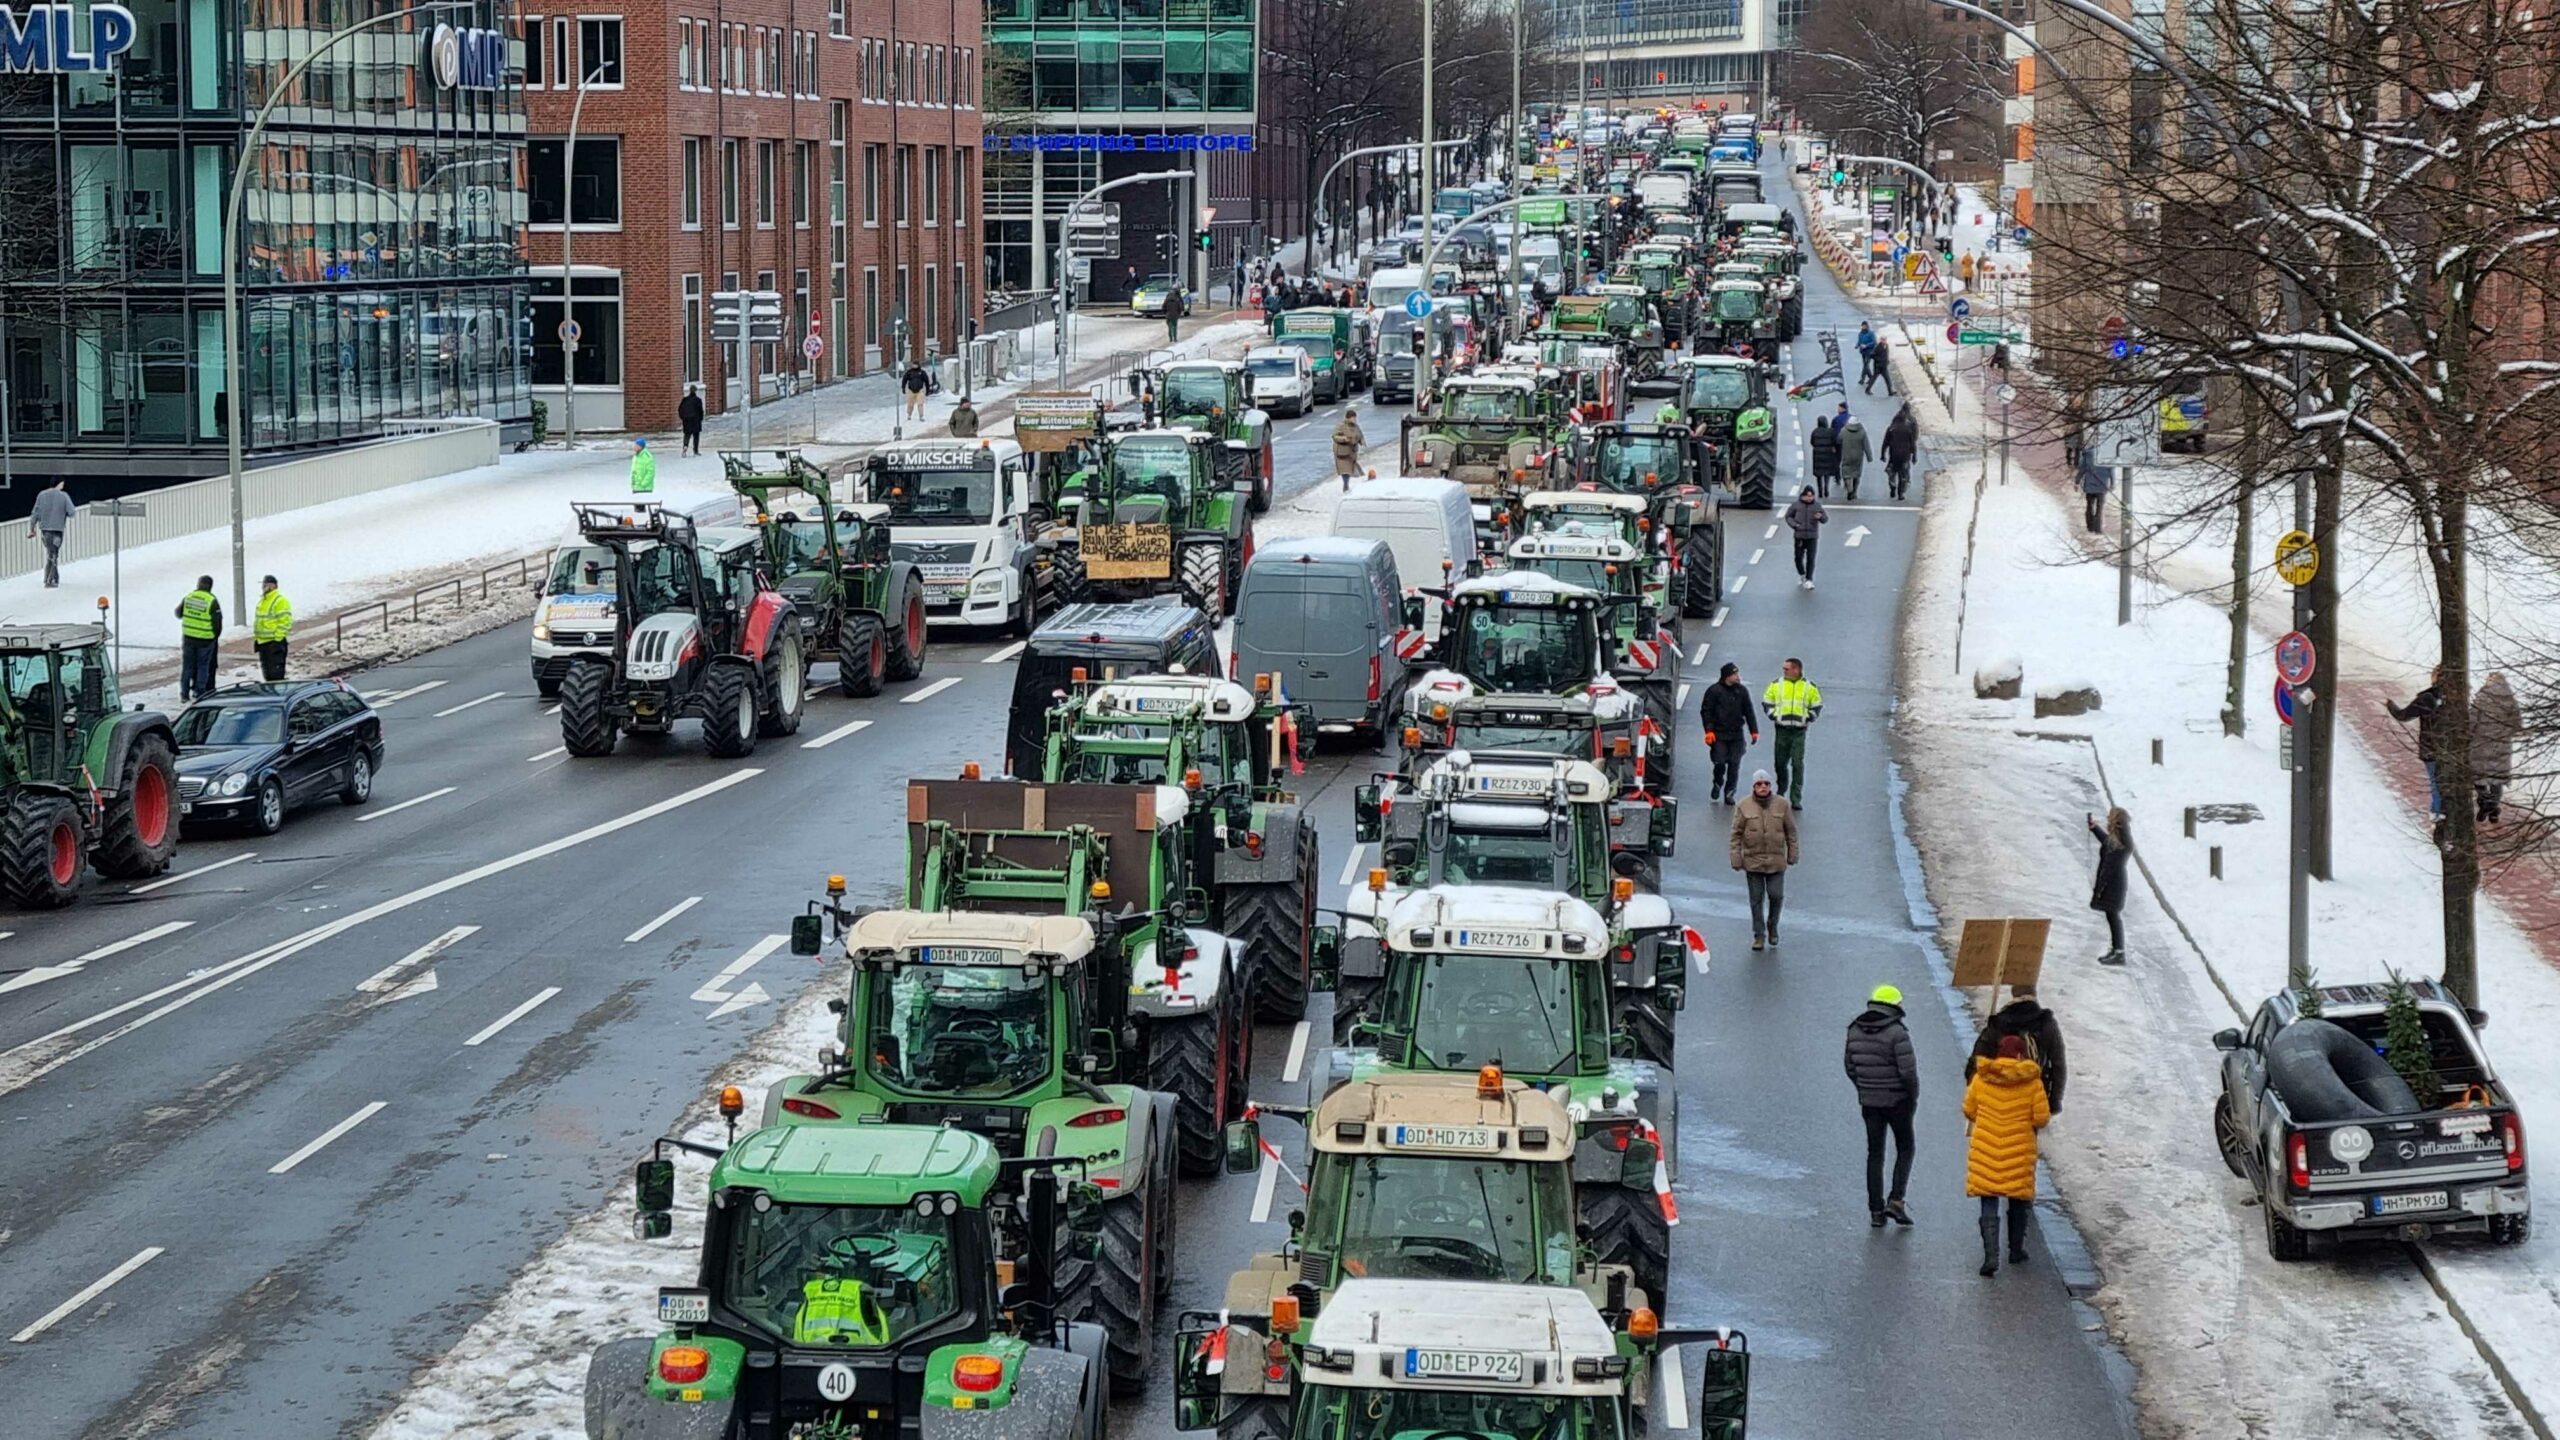 Traktoren in der Hamburger Innenstadt, fast alle Fahrspuren sind blockiert.